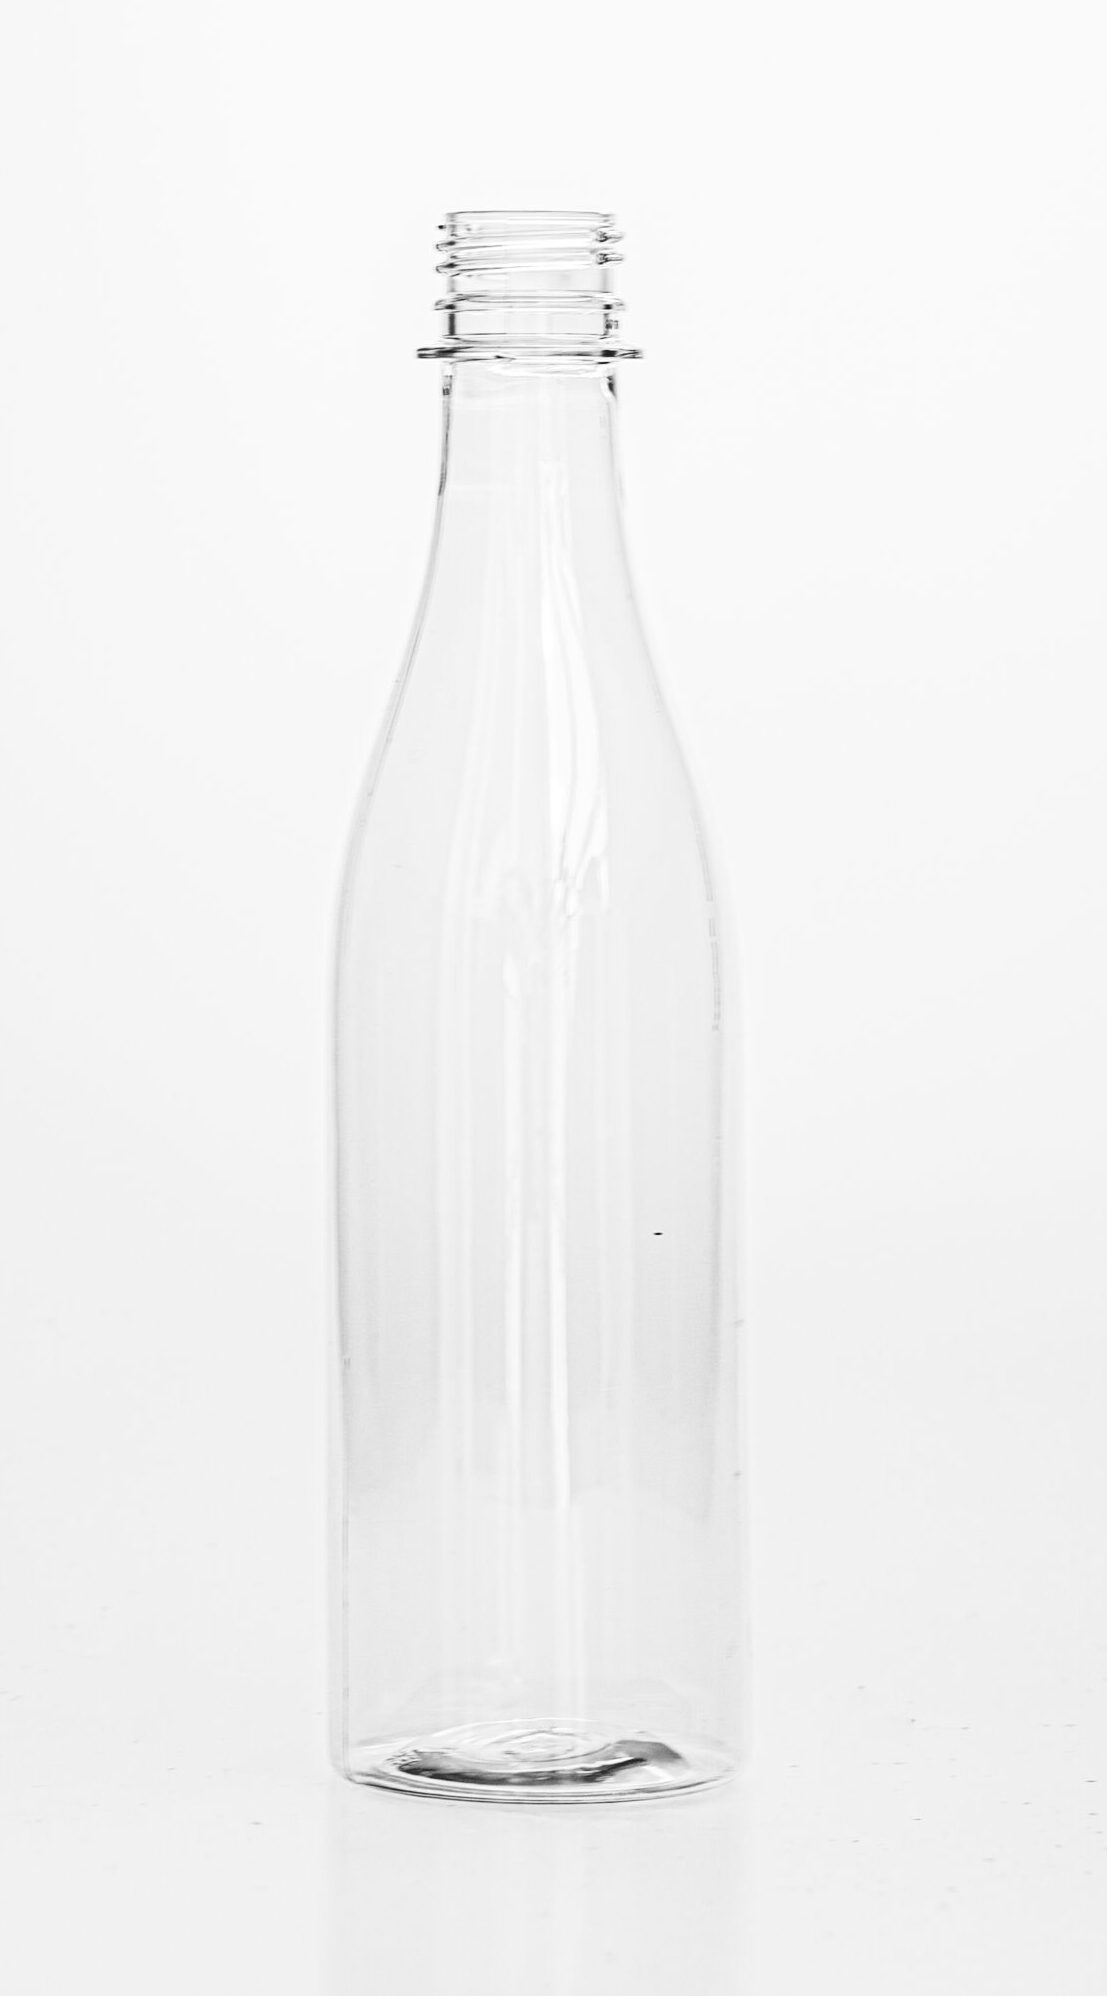 13oz/ 375ml / 375cc Plastic PET Bottle main image